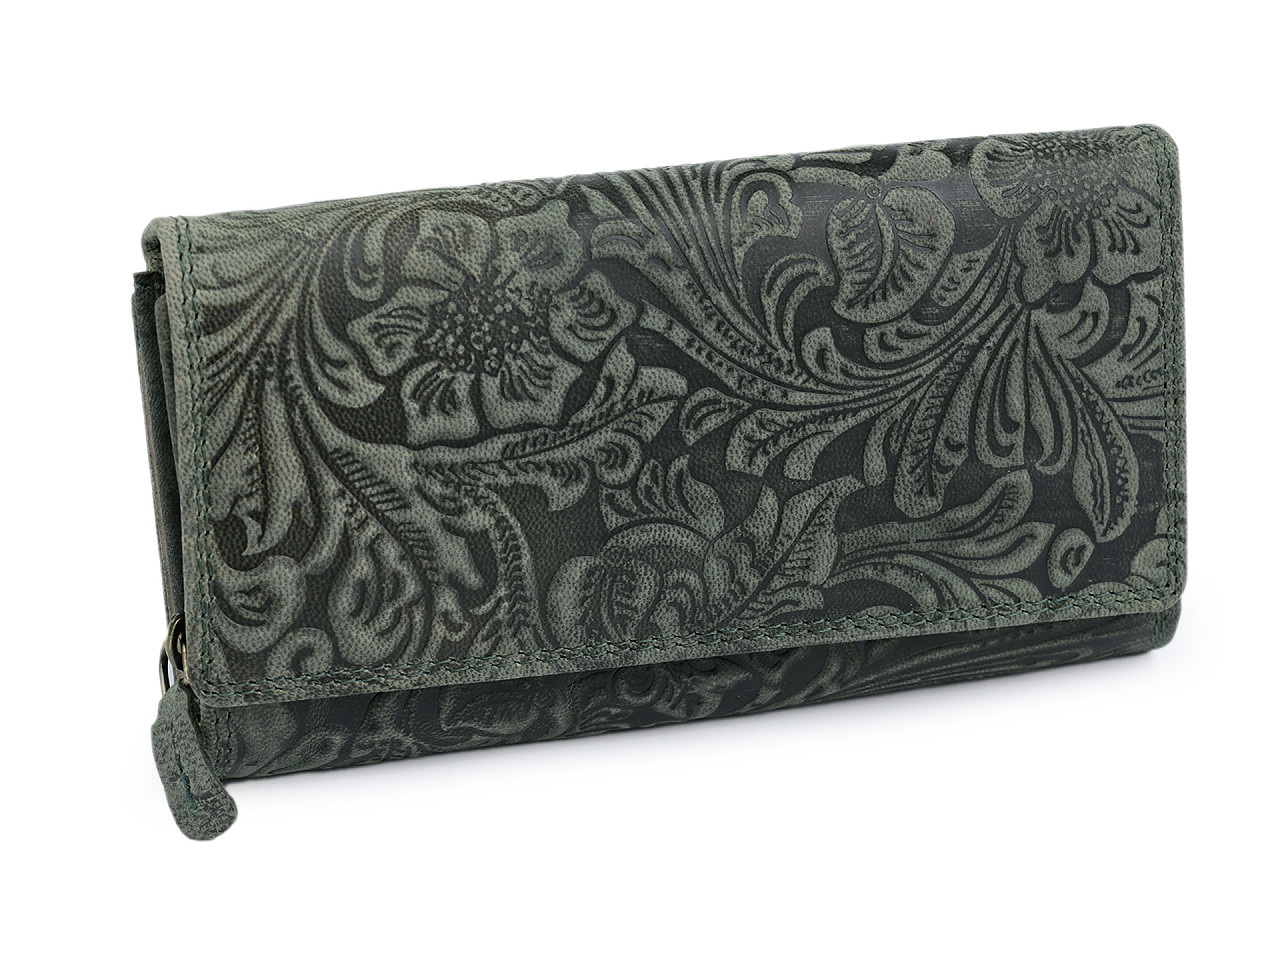 Damen-Geldbörse aus Leder mit Blumen, grün-schwarz, 1 Stück